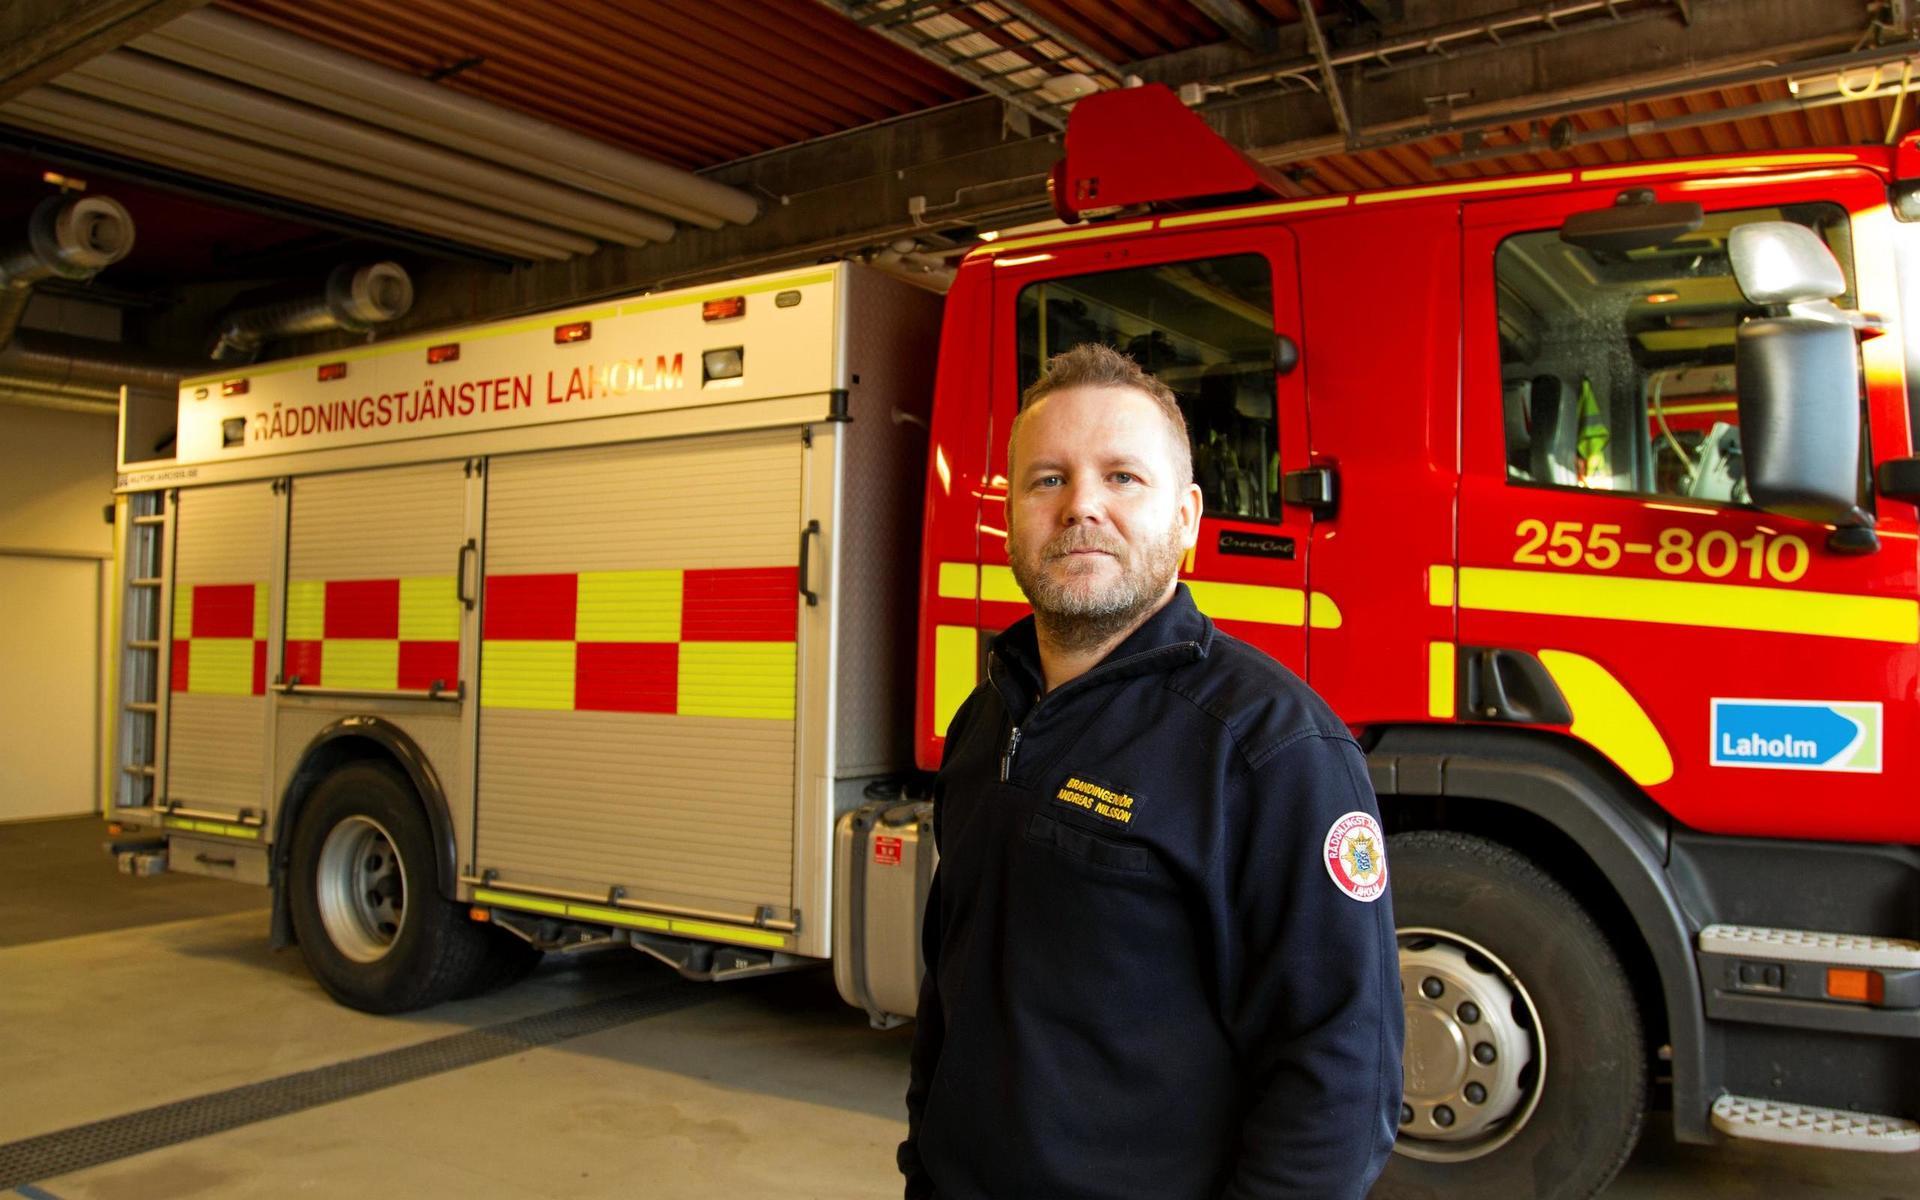 Andreas Nilsson är chef för räddningstjänsten i Laholms kommun. ”Man ska nog inte dra för stora slutsatser från statistiken”, säger han. Slump är en stor faktor vid olyckorna som kåren rycker ut på.